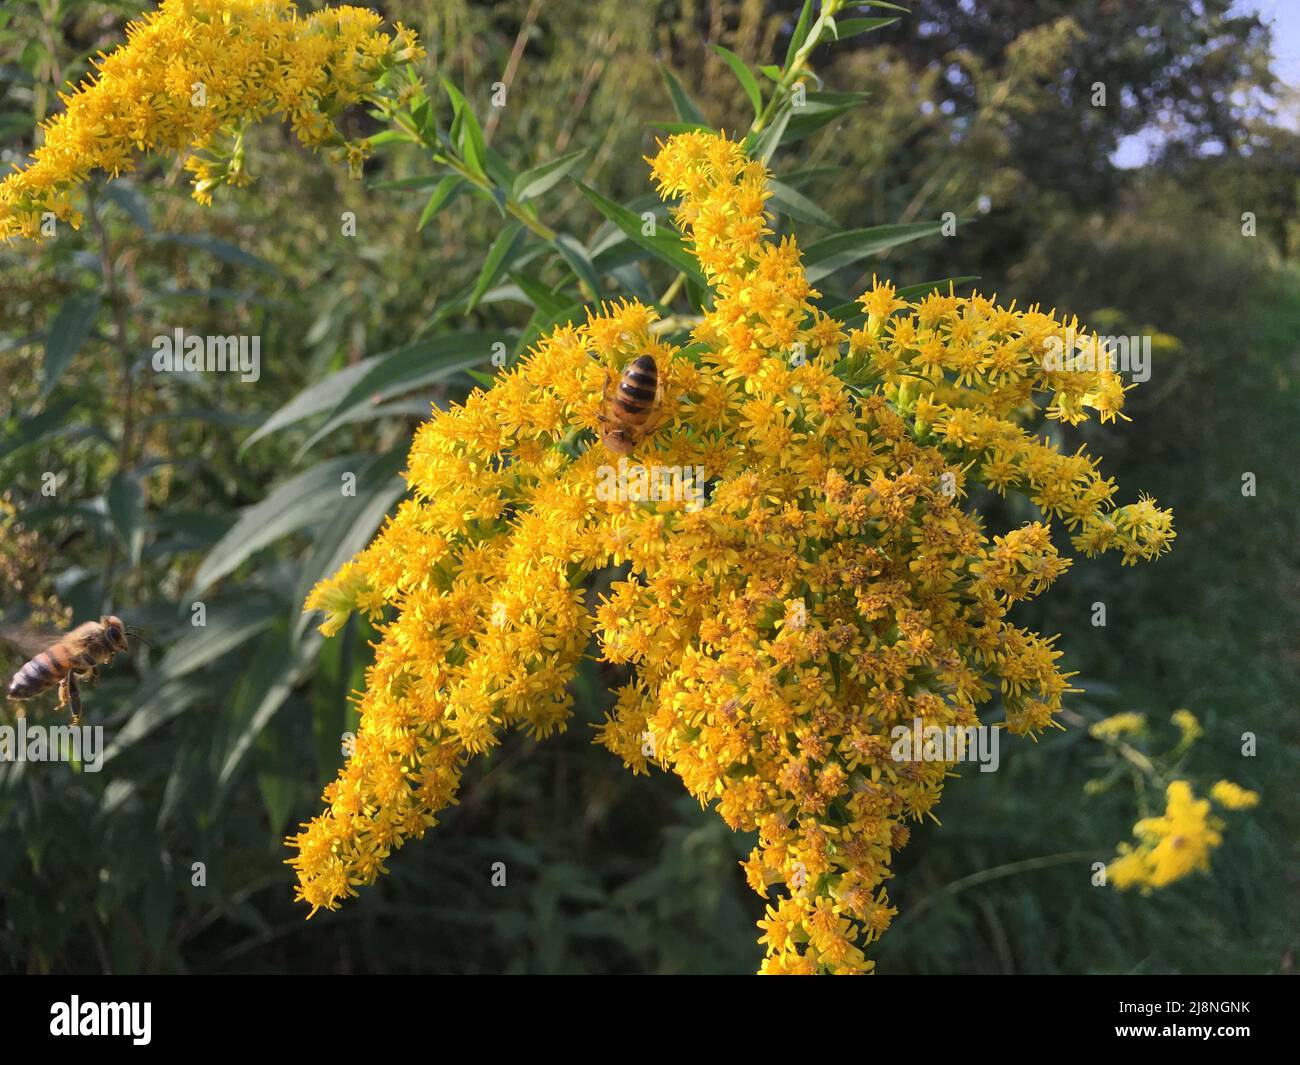 Biene auf einer Goldrute Blüte in gelb, auf der Wiese Stock Photo